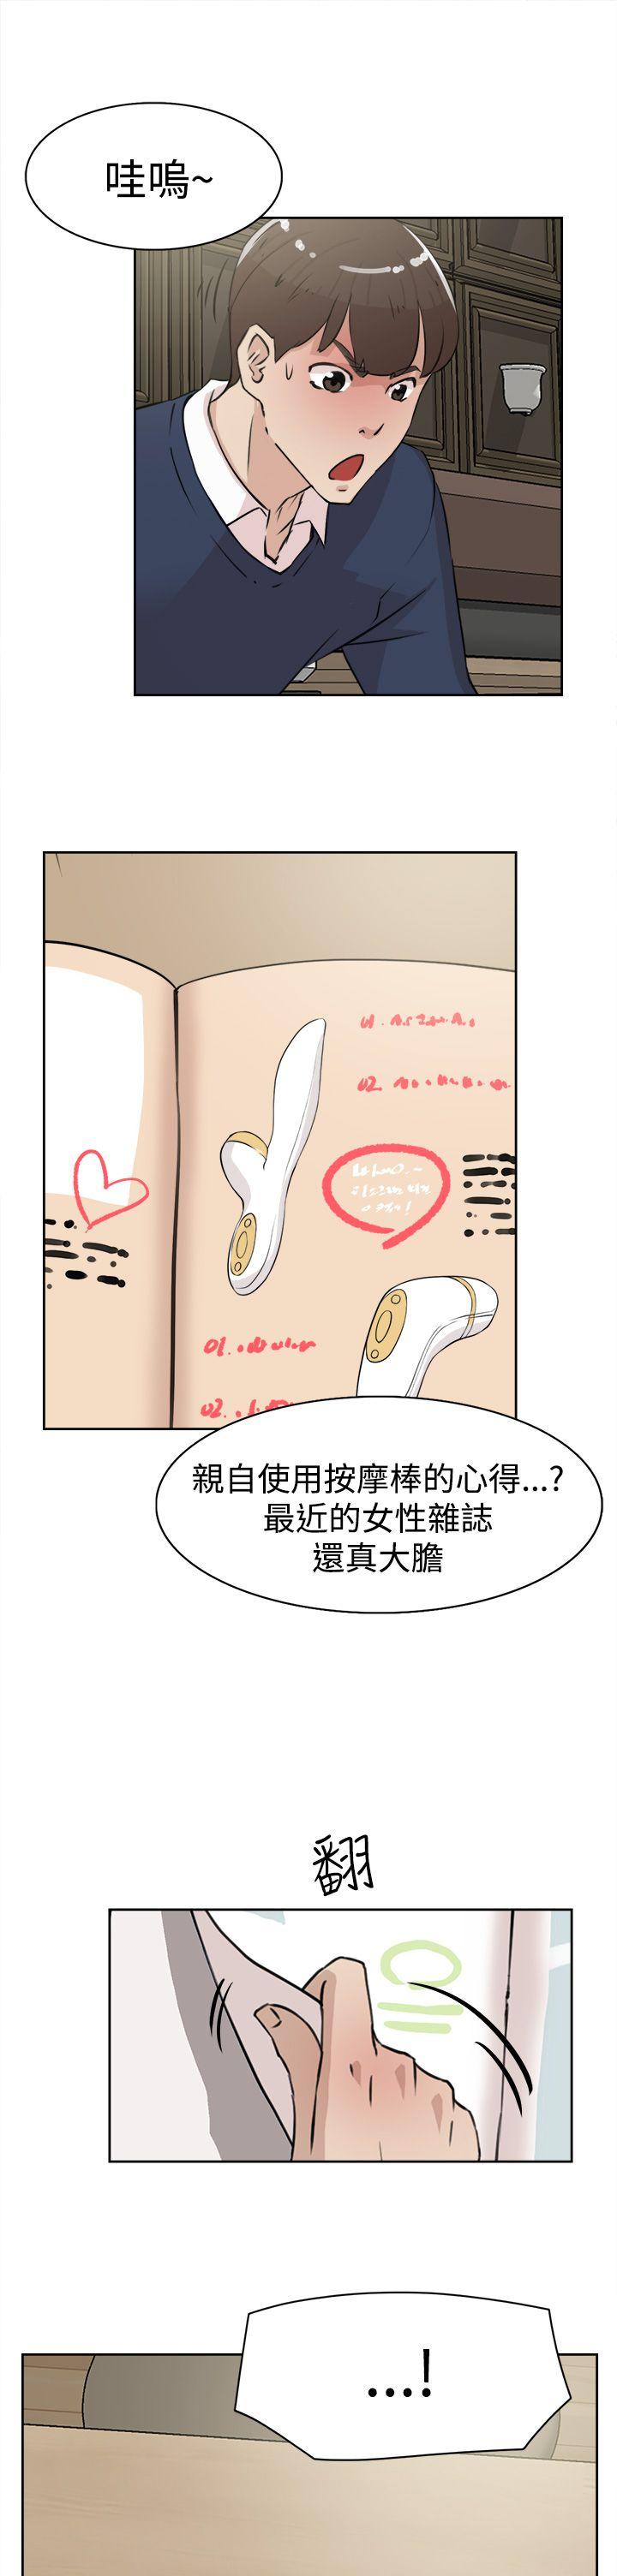 韩国污漫画 她的高跟鞋(無刪減) 第22话 25